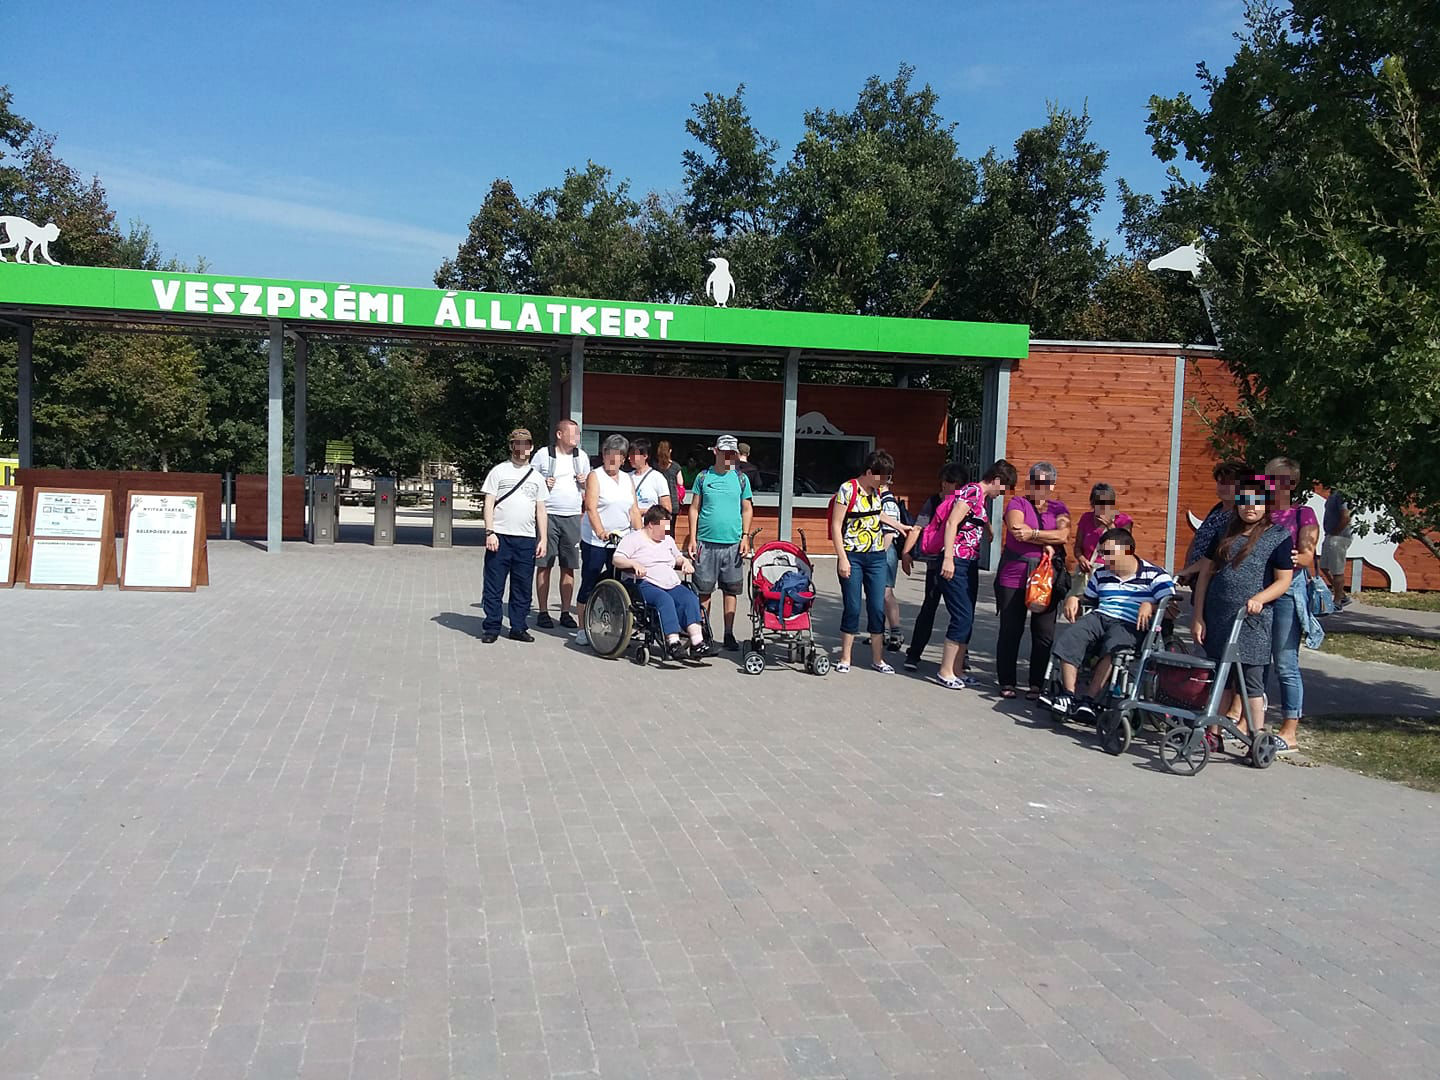 Nem kaptak kedvezményes jegyet a fogyatékkal élők a Veszprémi Állatkertben